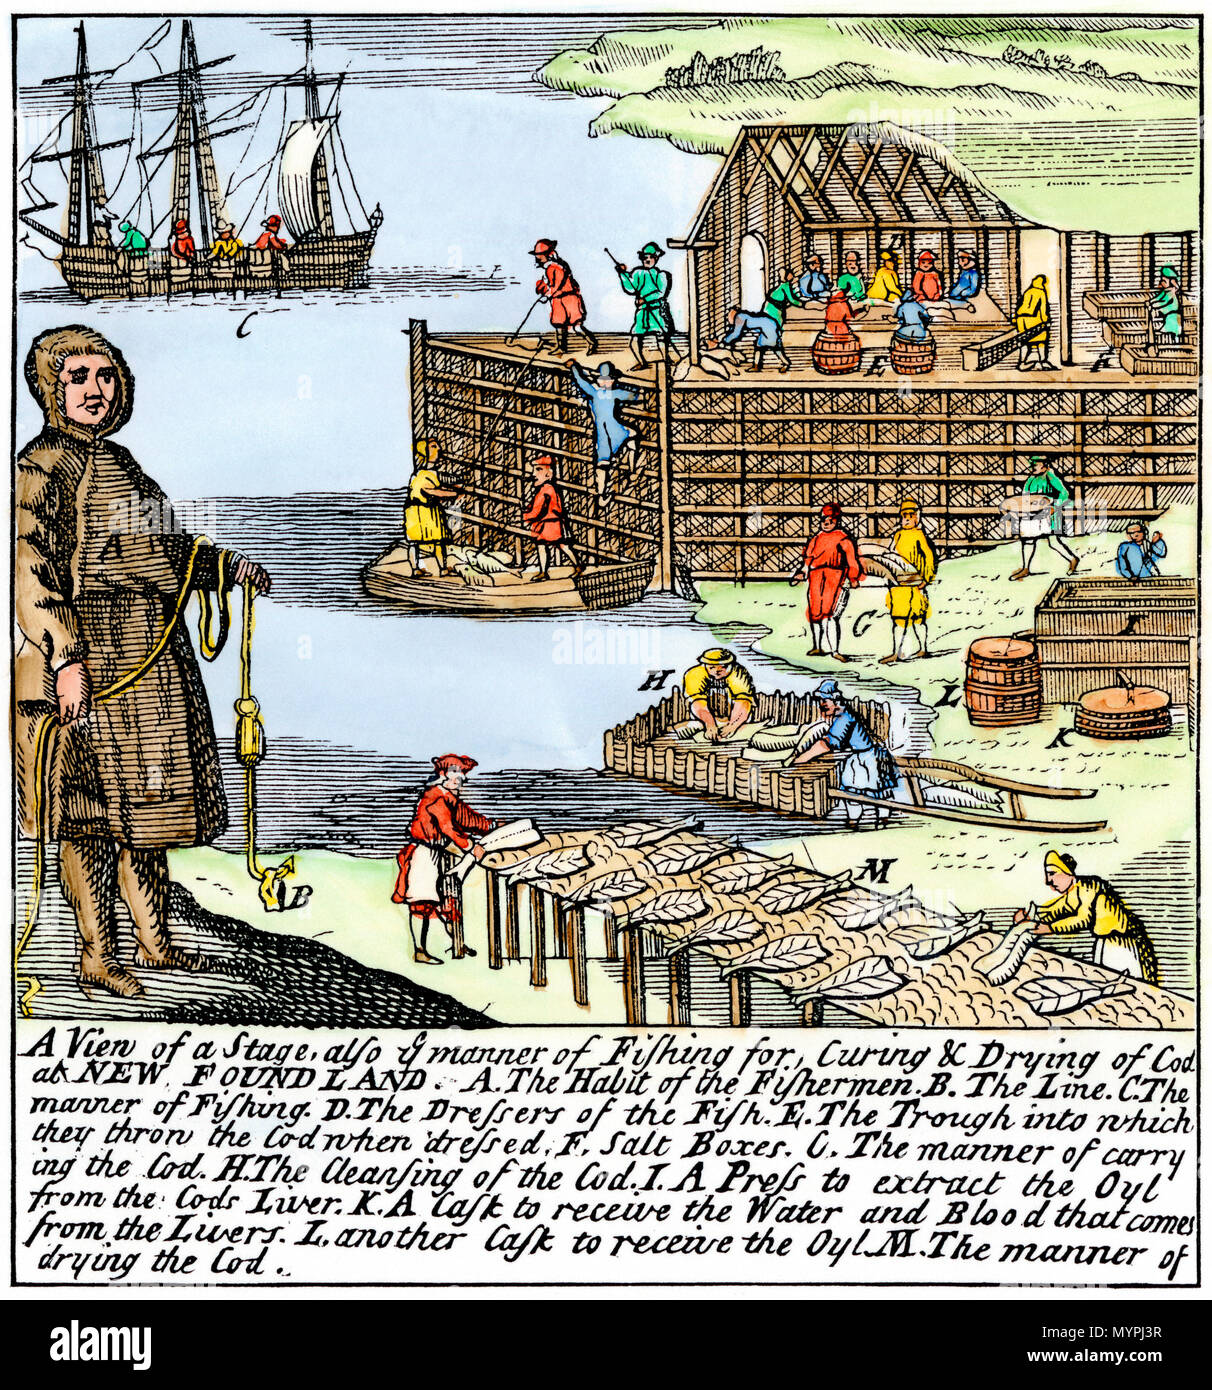 Les pêcheurs de morue le séchage et le salage du poisson sur la côte de Terre-Neuve, 1700. À la main, gravure sur bois Banque D'Images